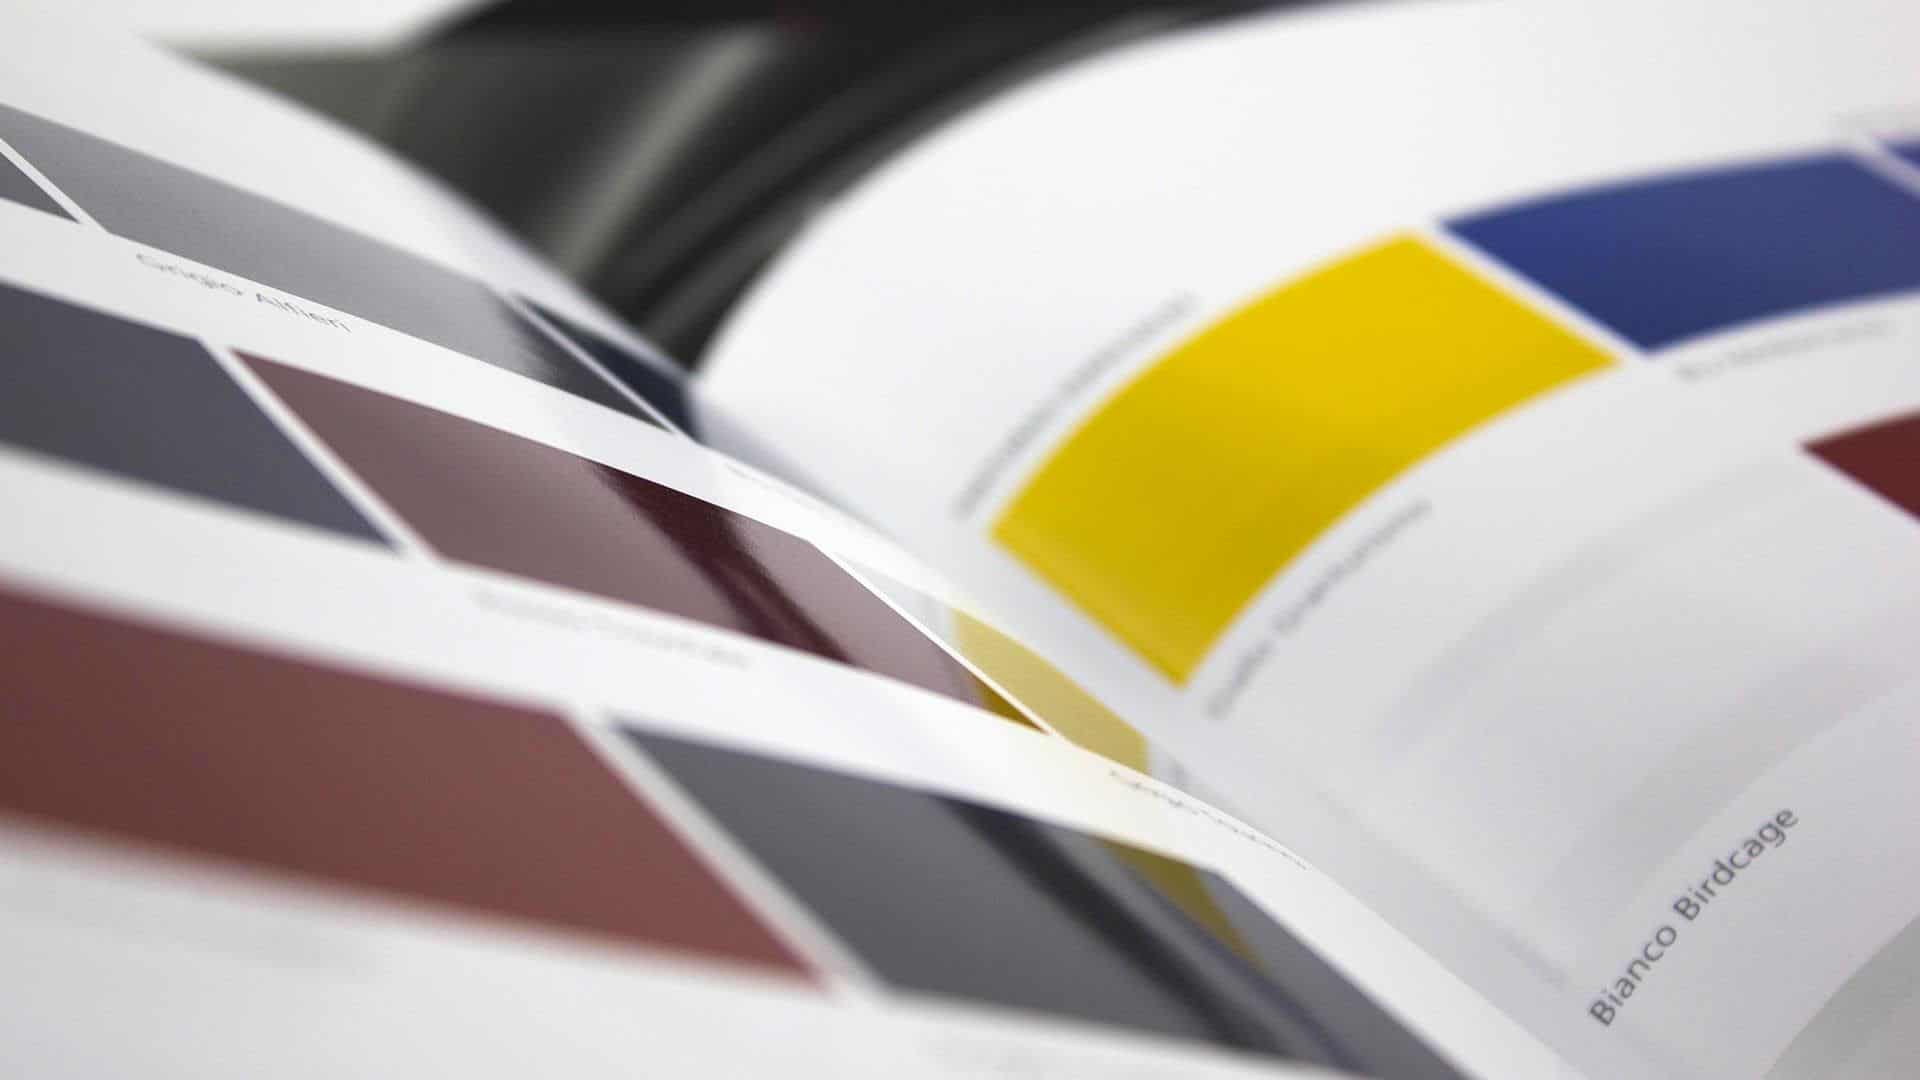 Tecnica di stampa offset che consente la verniciatura lucida o opaca del foglio o di sezioni di esso durante il processo di stampa.